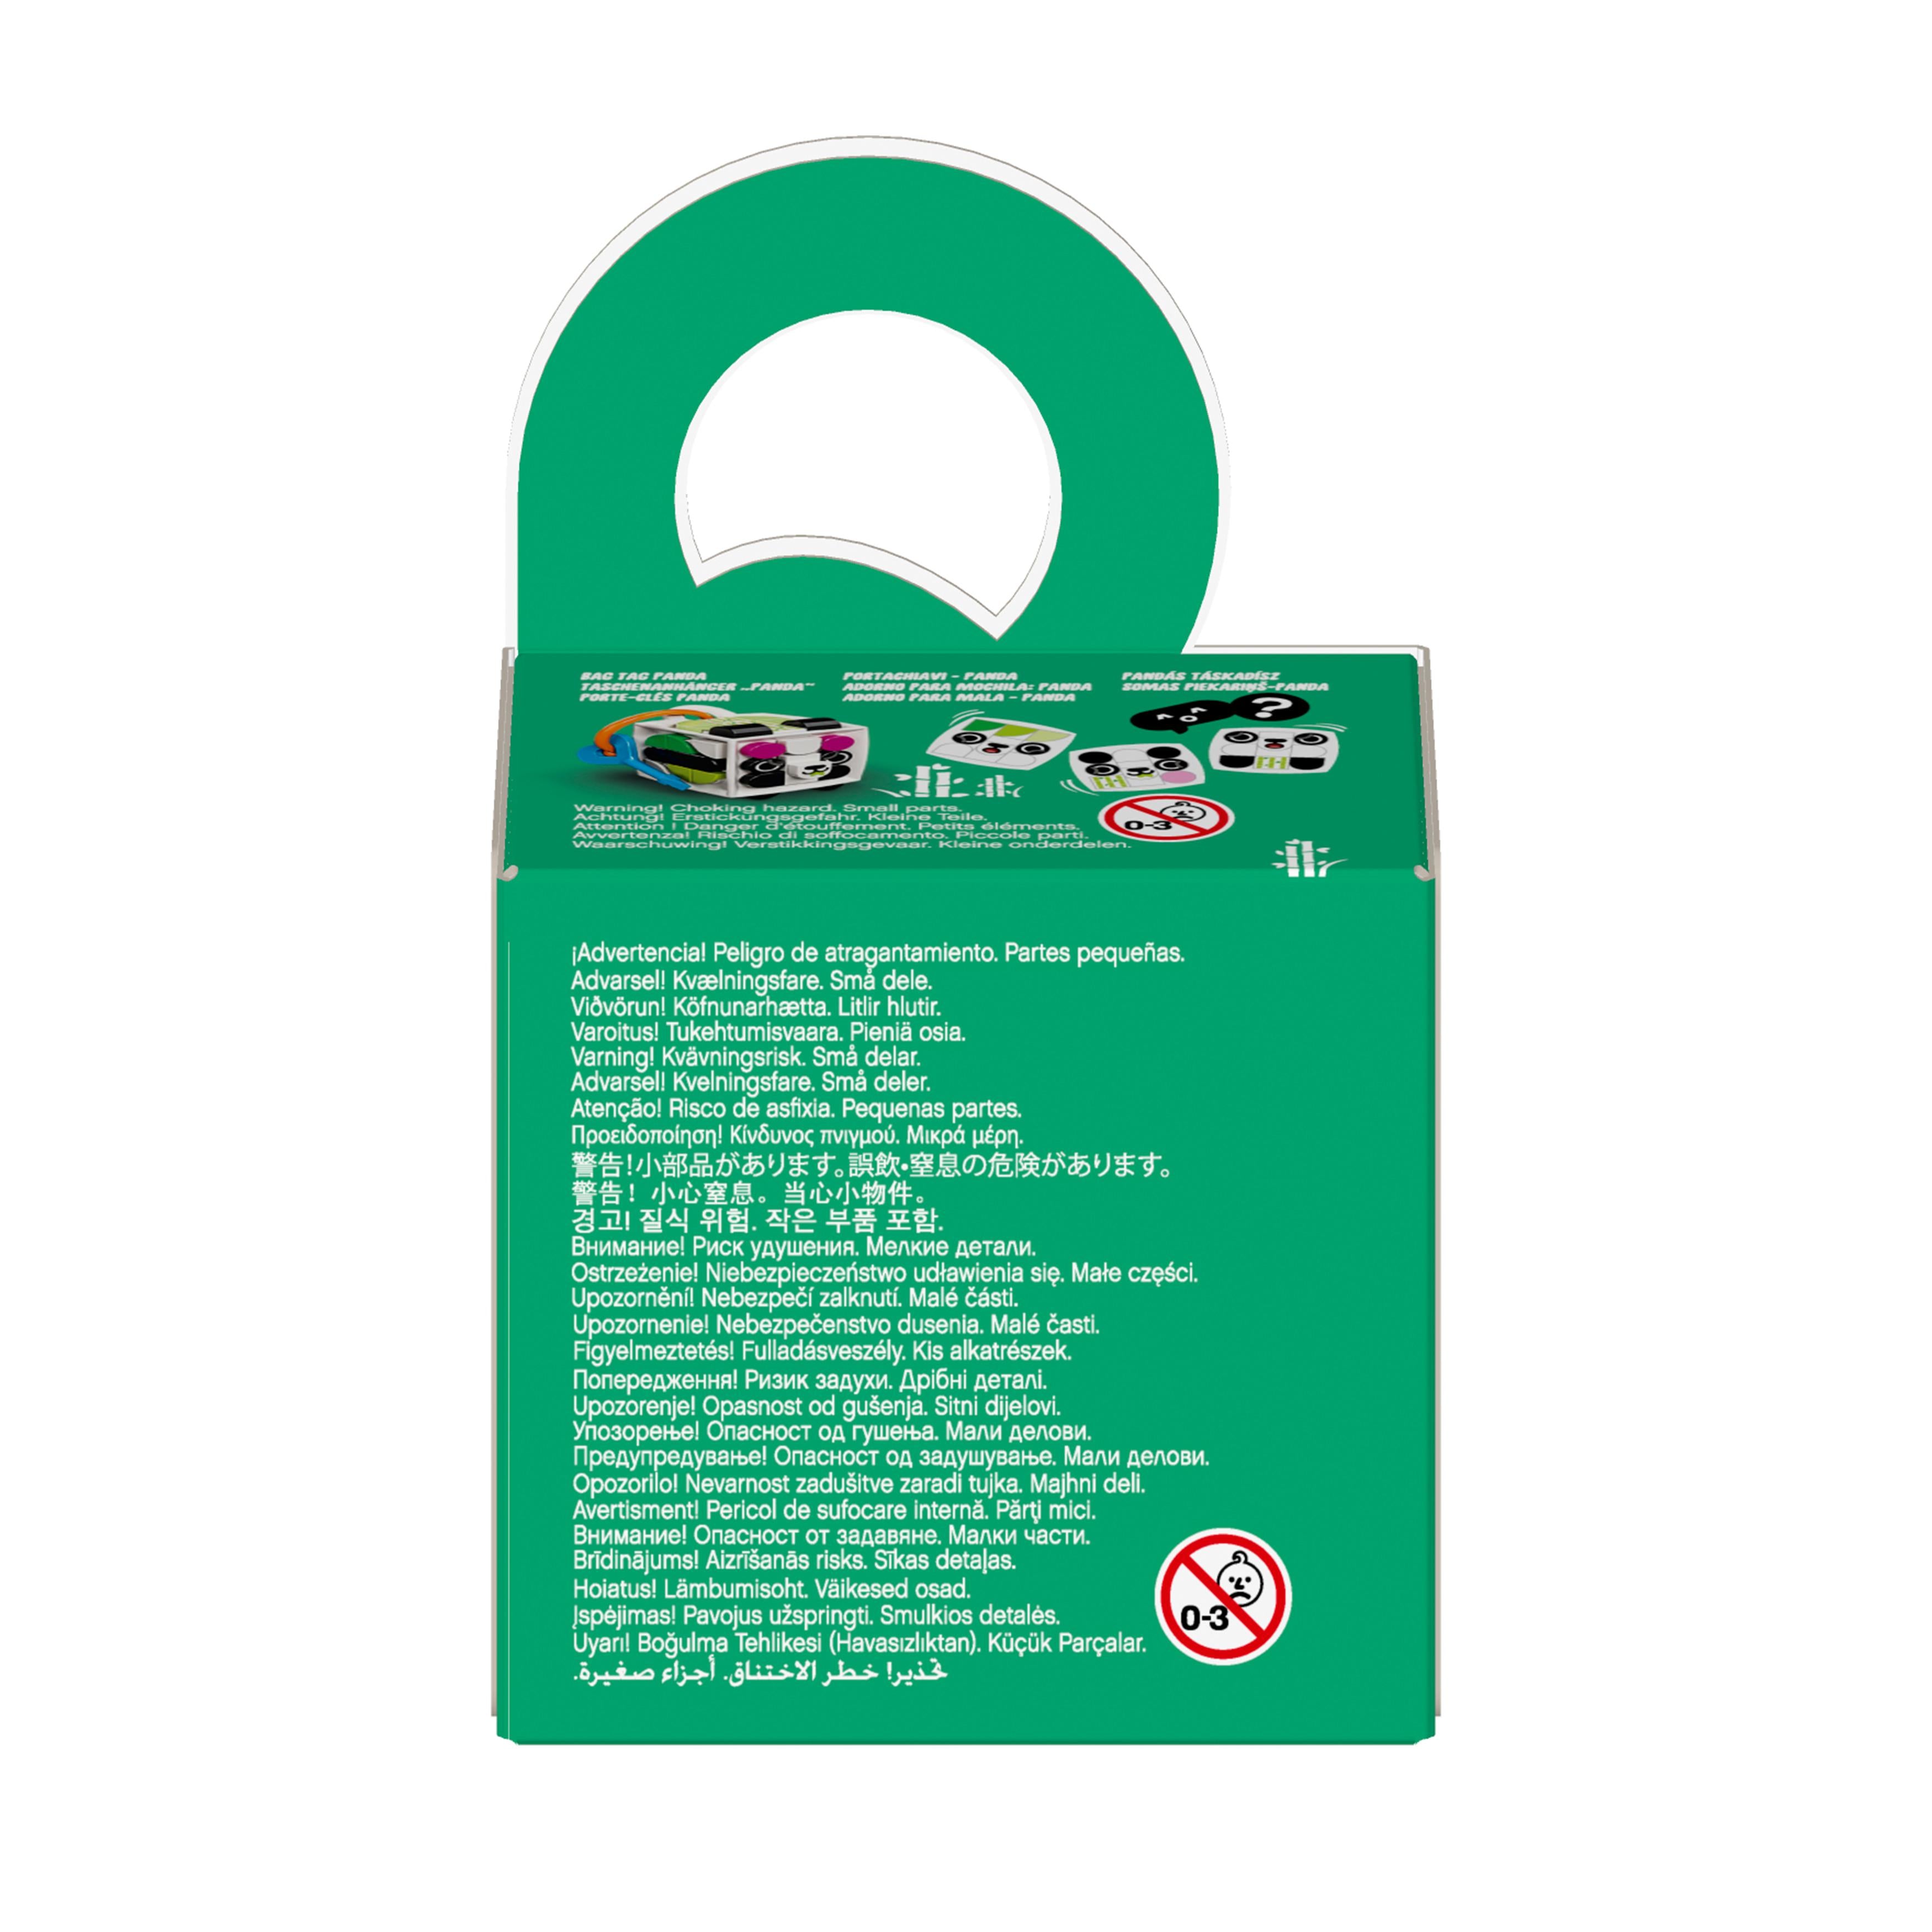 LEGO® DOTS Bag Tag Panda Accessories Craft Set 41930 Default Title